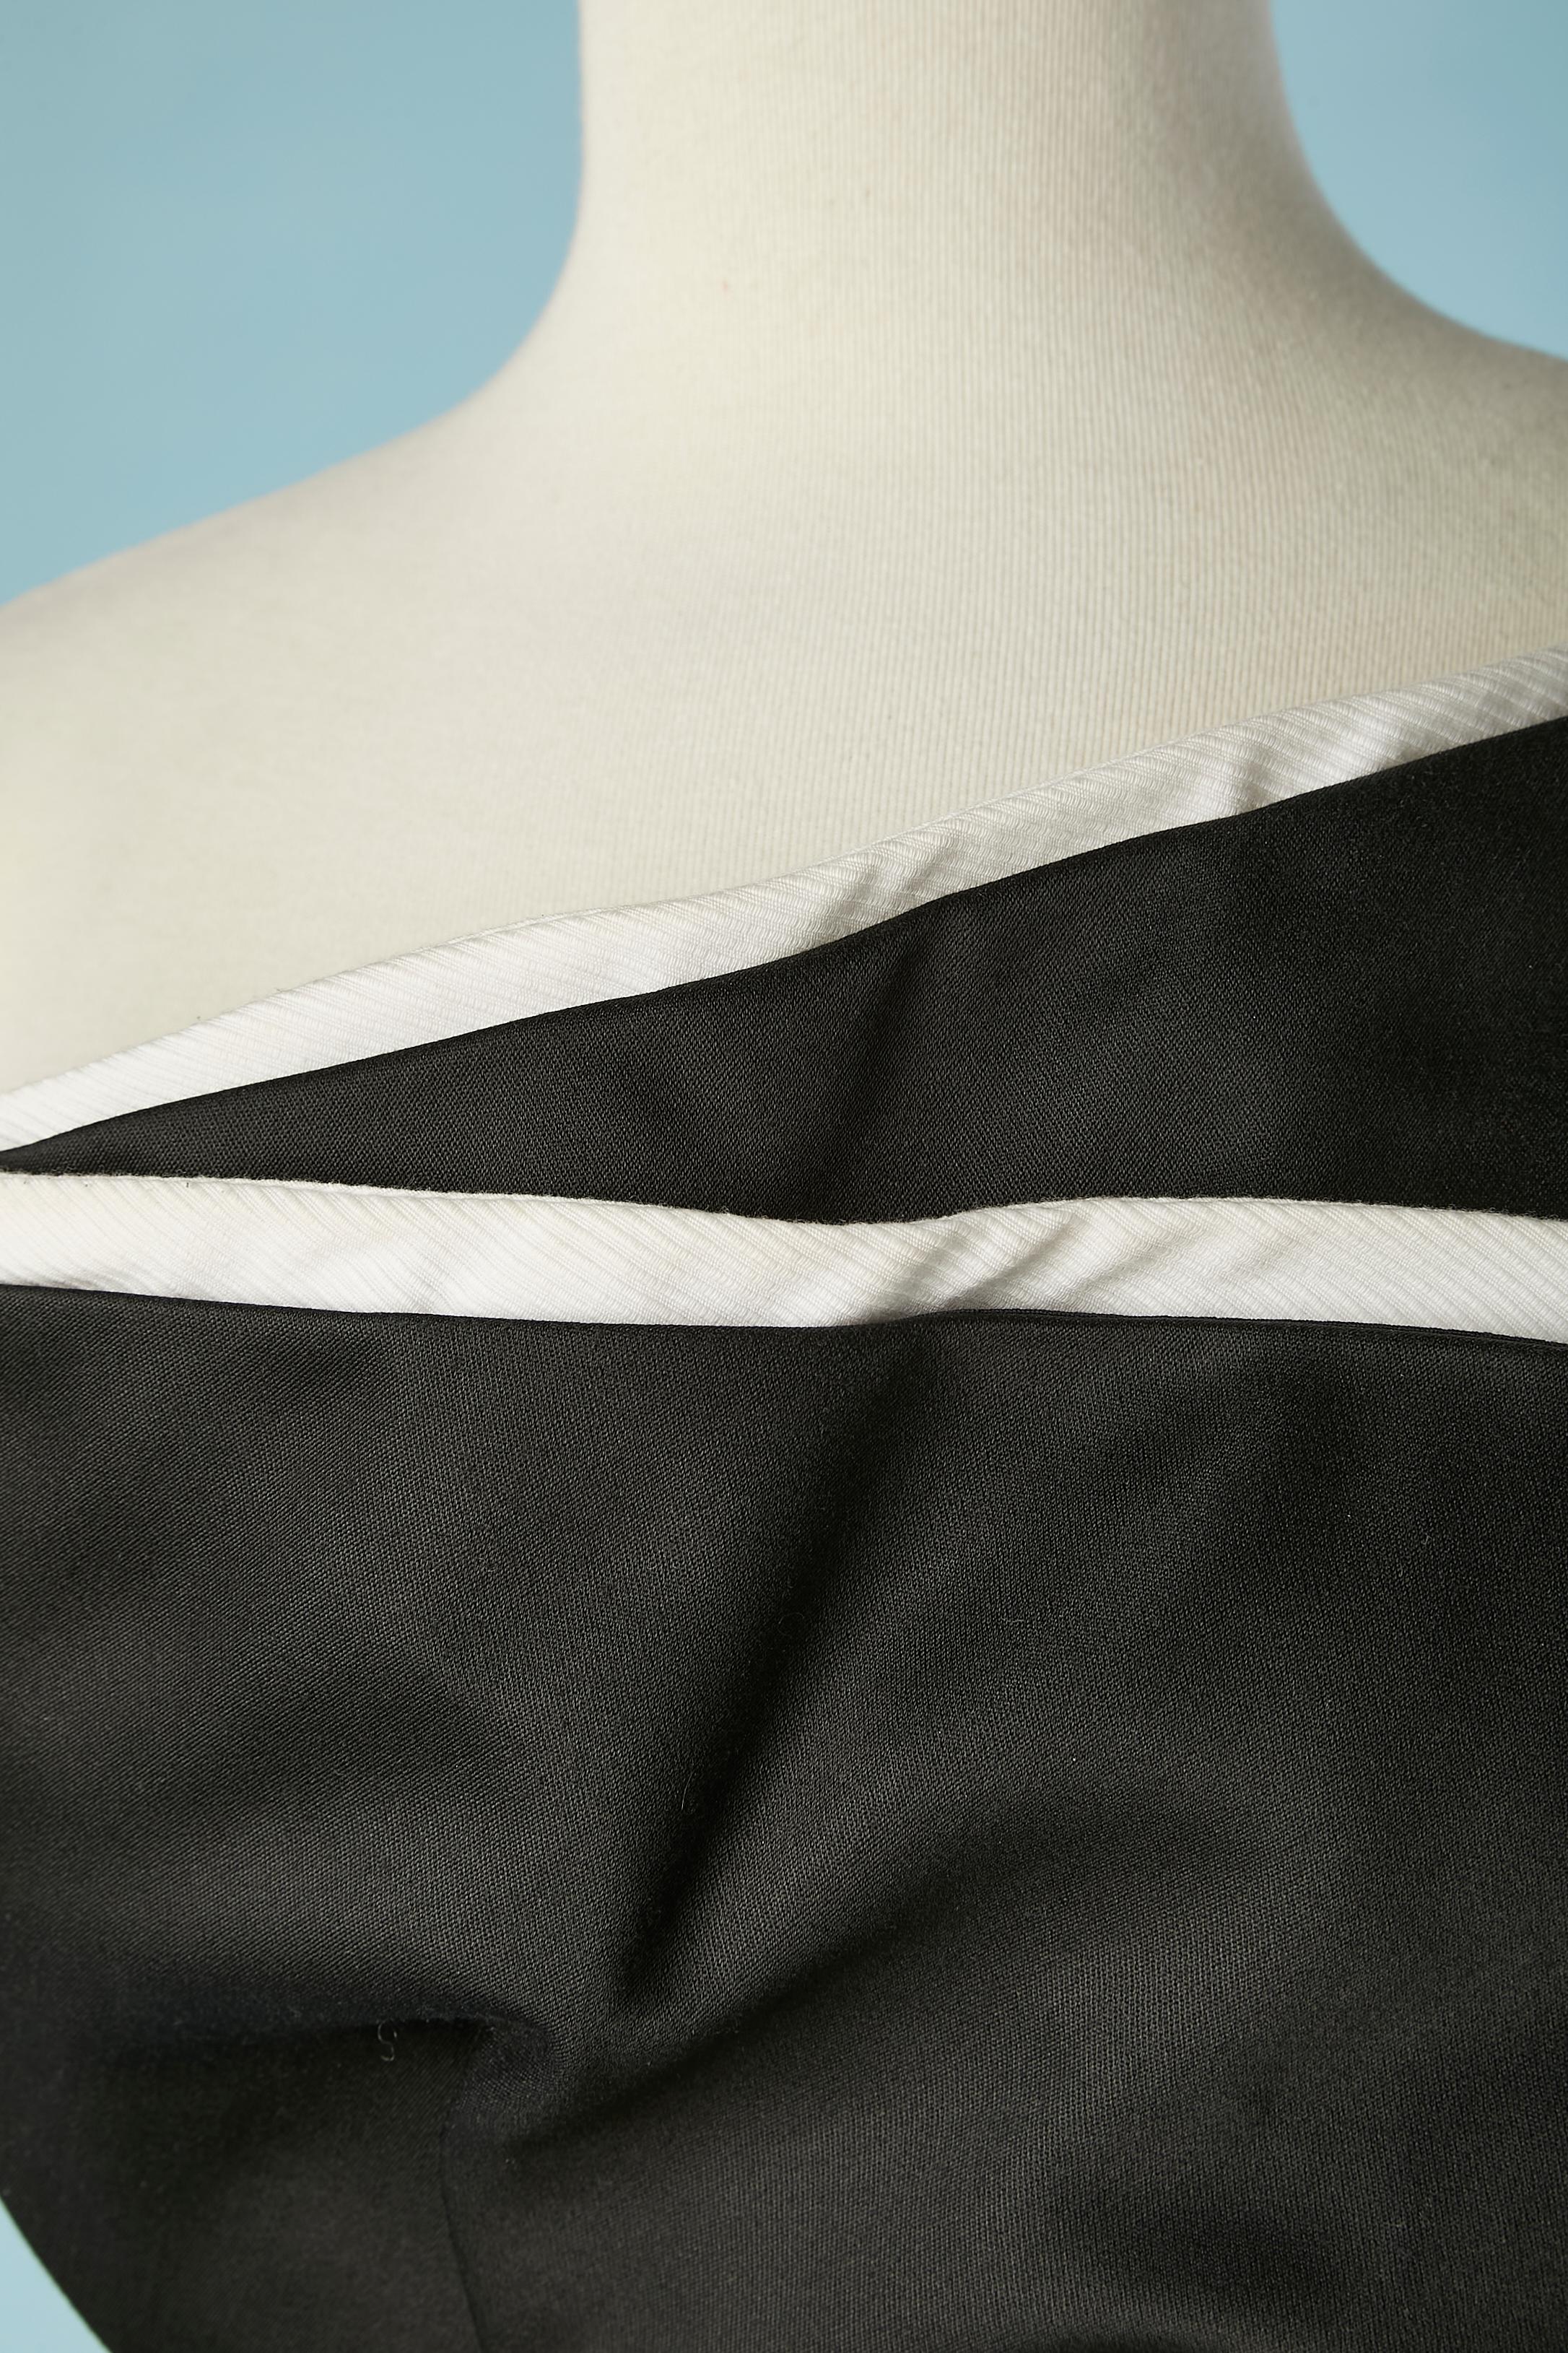 Schwarz-weißes, asymmetrisches Bustier-Abendkleid. Kein Stoffetikett, aber beide Stoffe scheinen aus Baumwolle zu sein (der weiße hat ein gestreiftes Ton-in-Ton-Muster). Das schwarze Futter ist wahrscheinlich aus Acetat. 
Das Bustier mit Knochen und